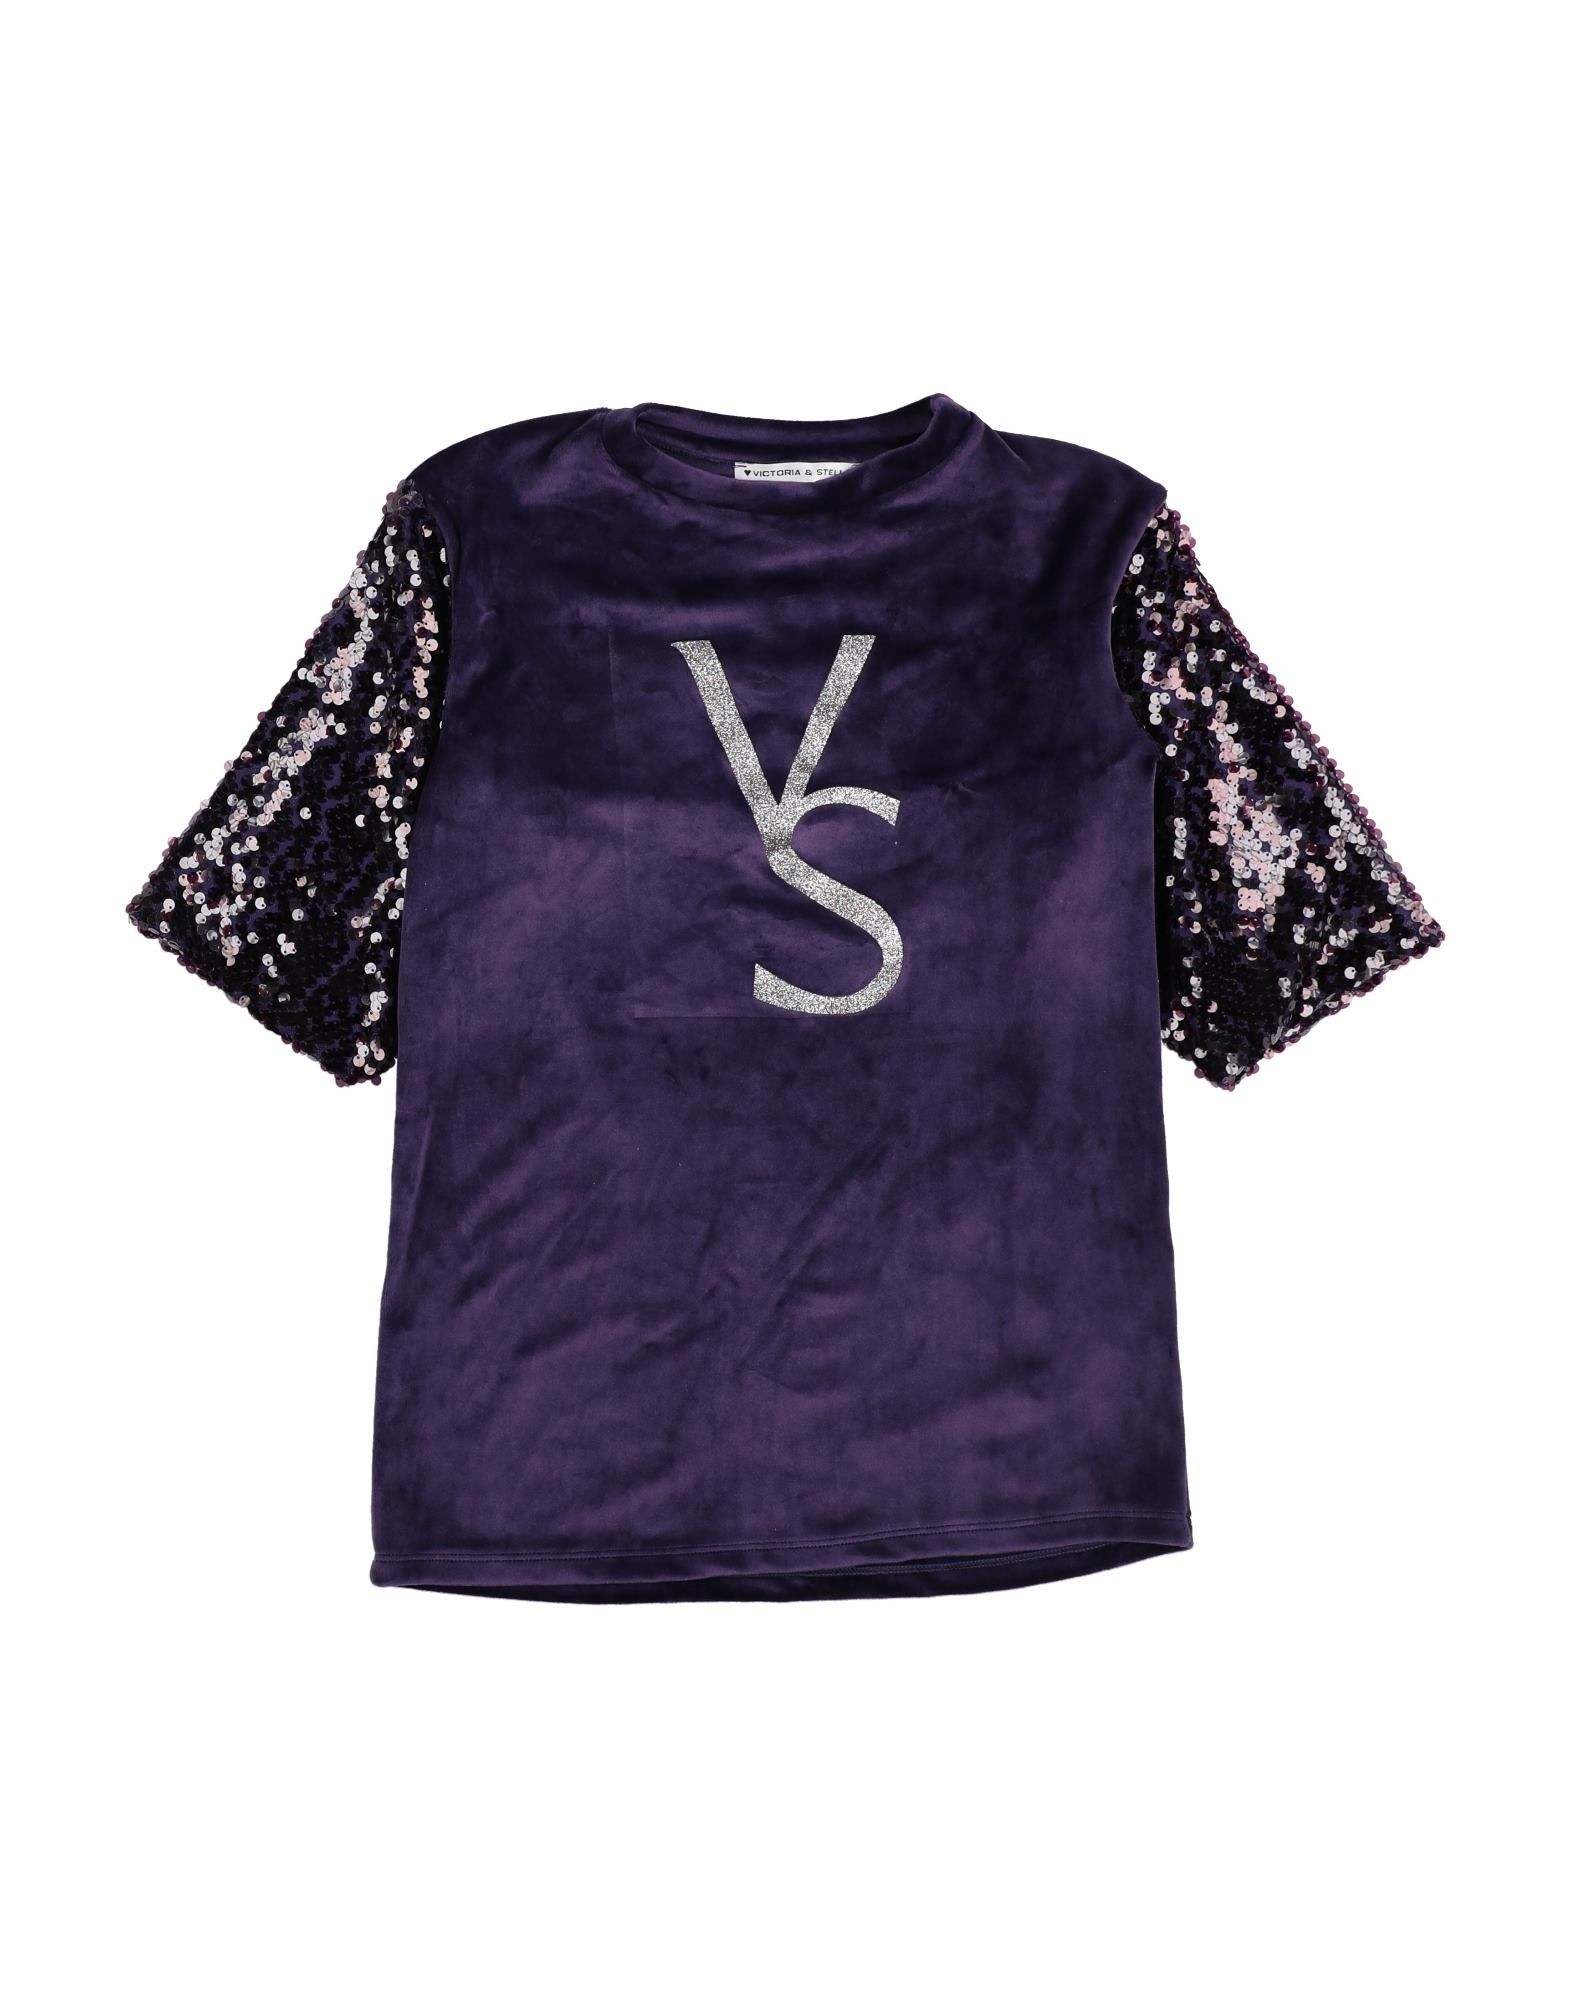 Victoria & Stella Kids' Sweatshirts In Purple